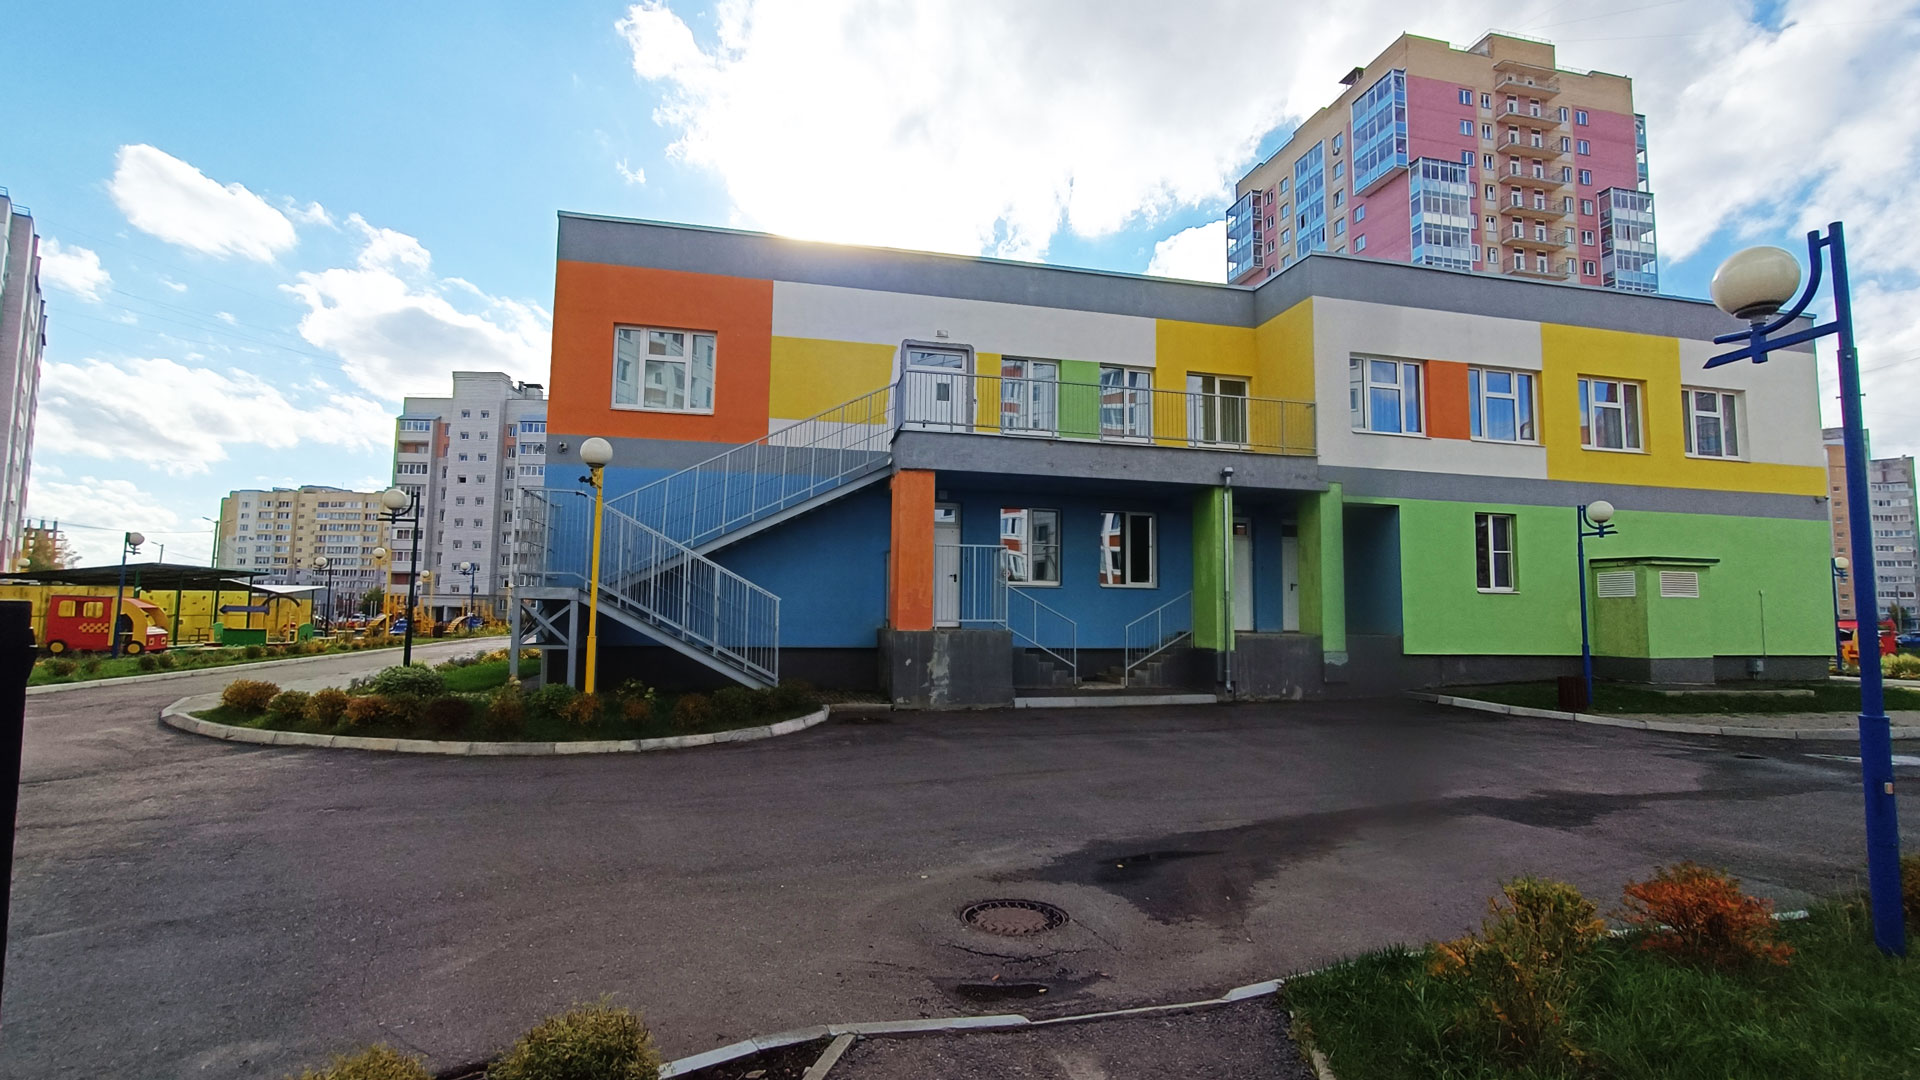 Детский сад 98 Ярославль: общий вид здания.